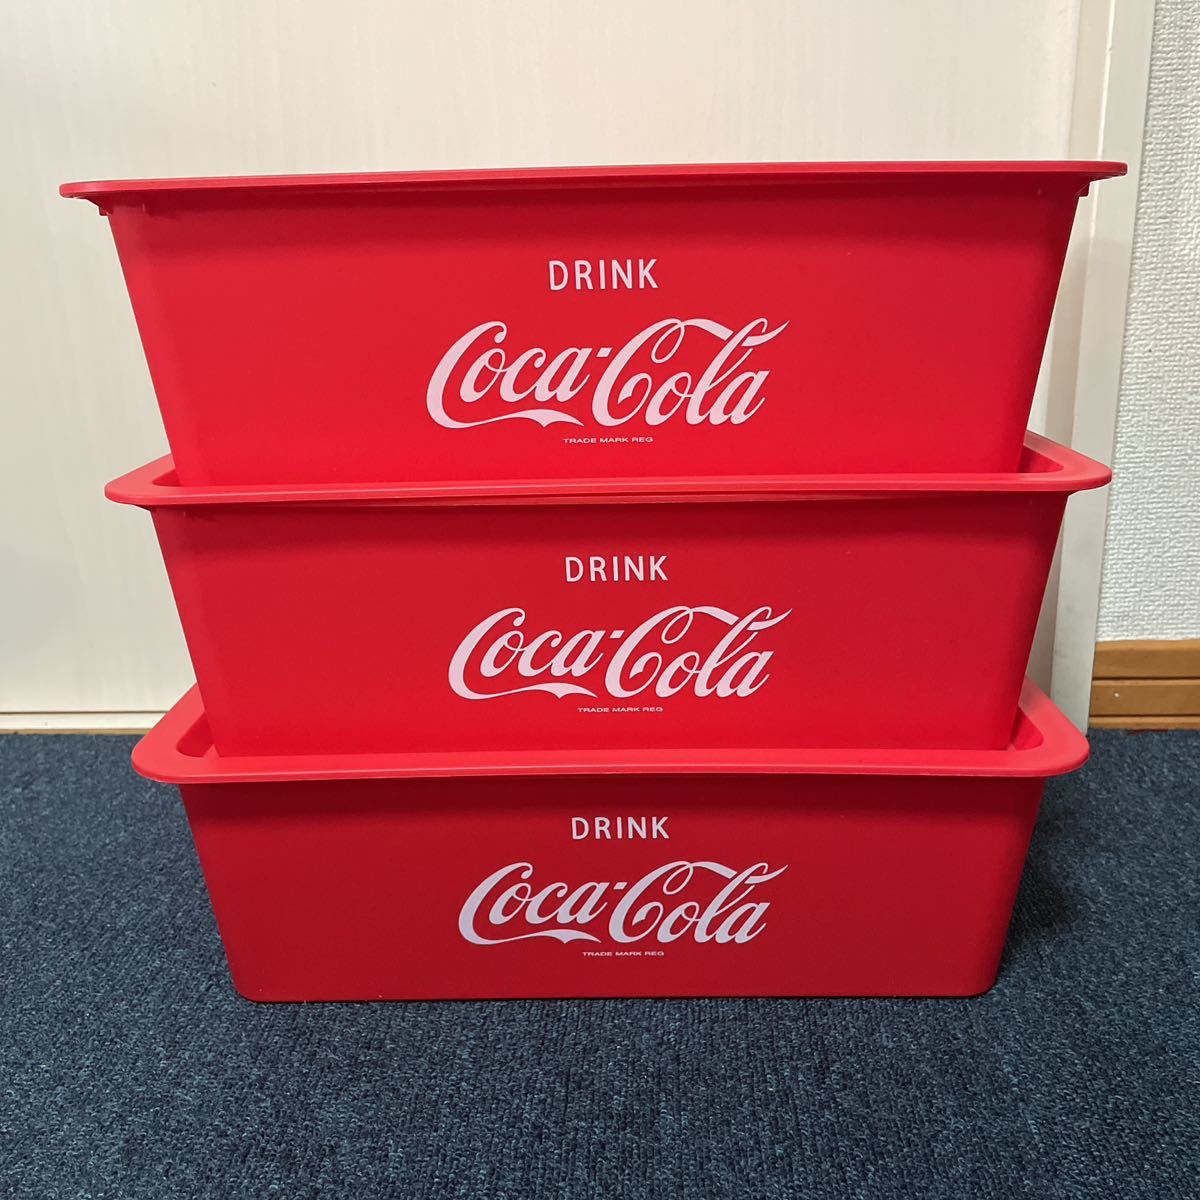  не использовался Coca Cola крышка имеется квадратное место хранения BOX. type красный 3 шт. комплект пластик корзина box Coca - Cola